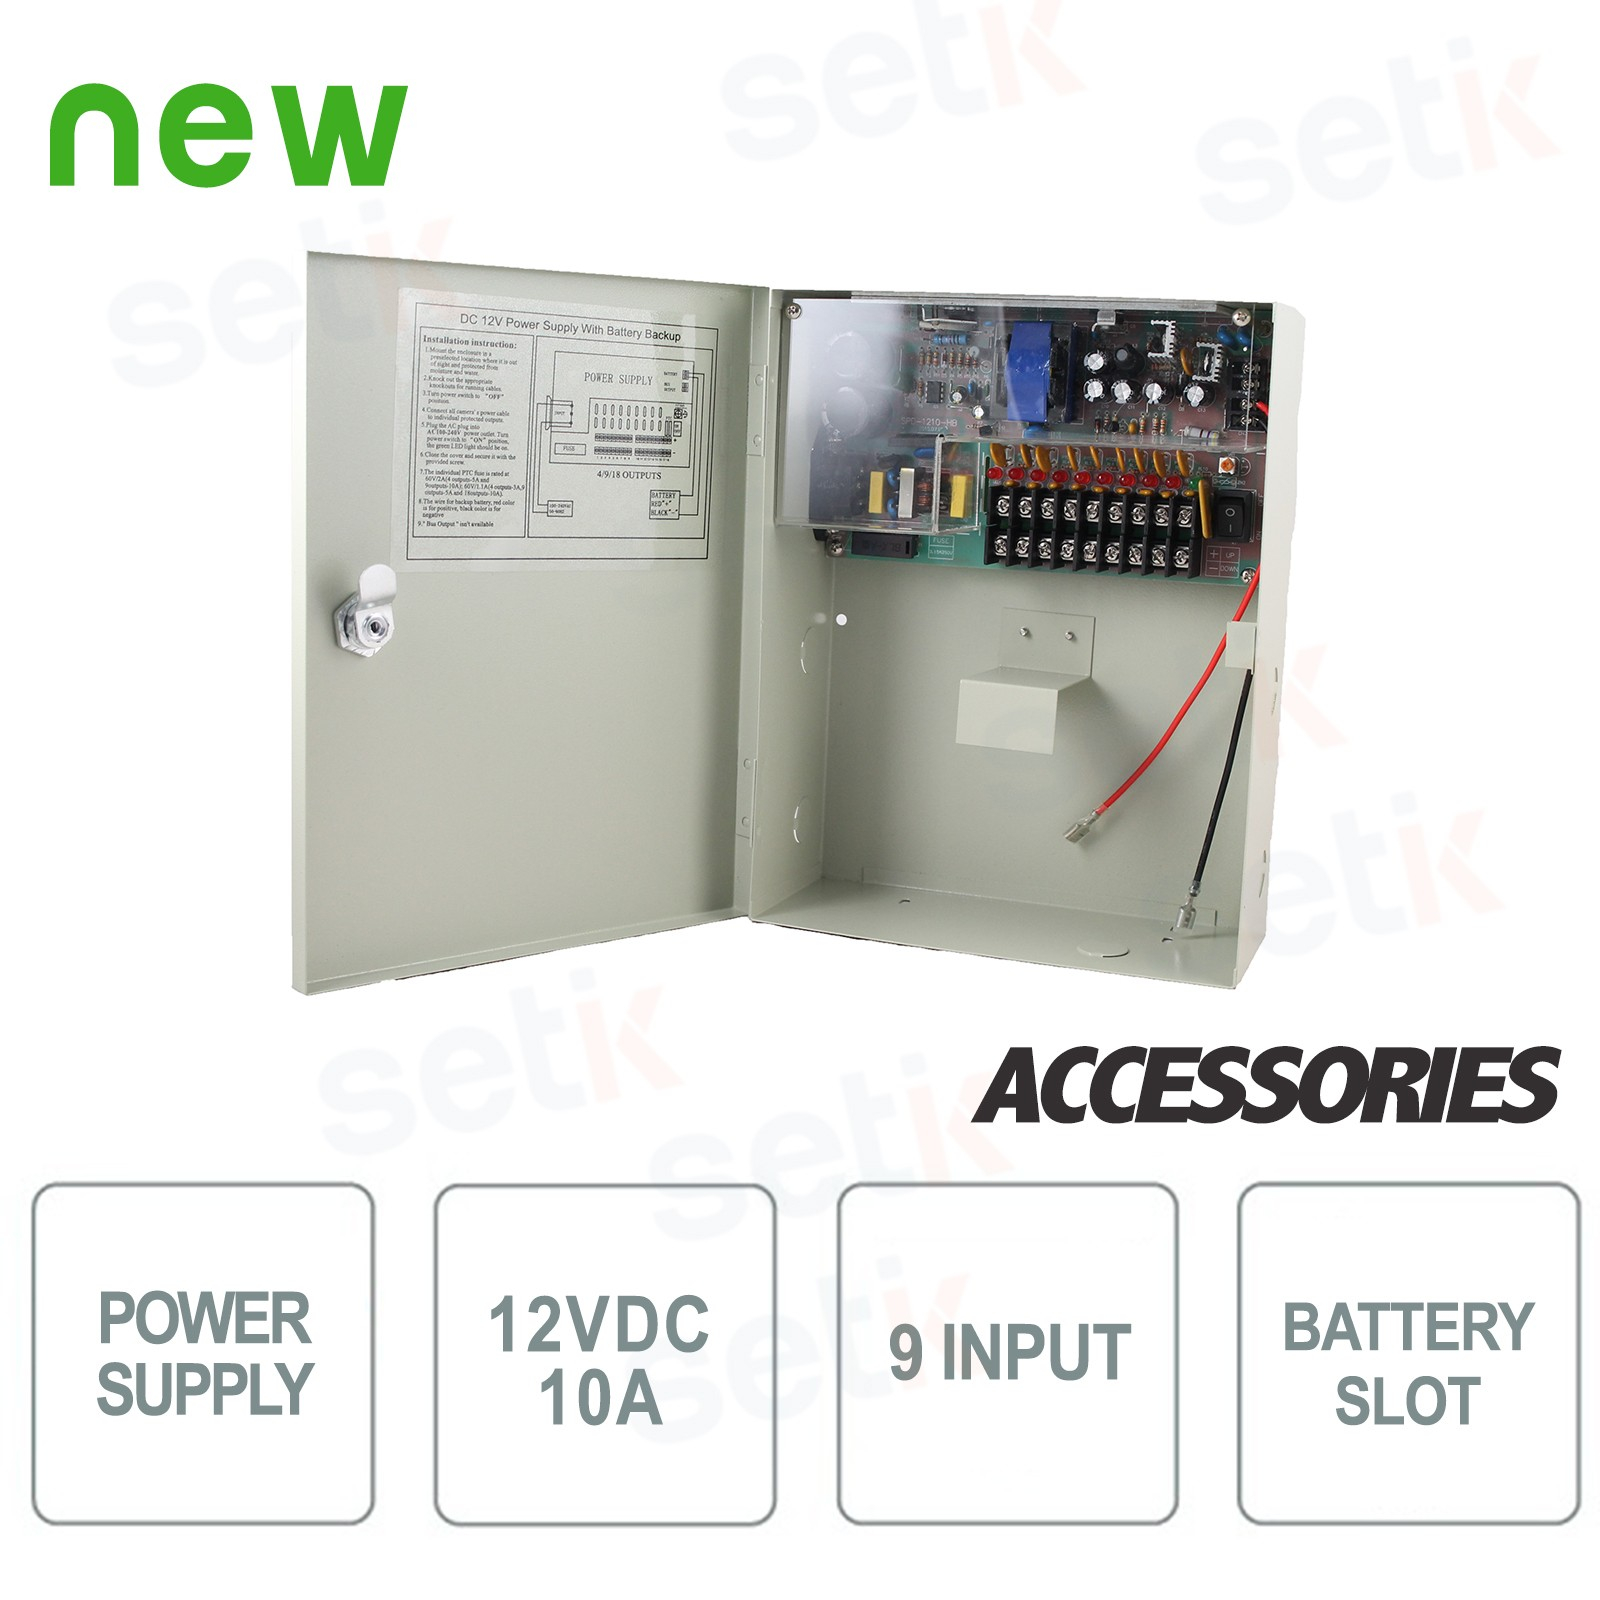 https://cdn.setik.biz/9925-hd/boite-d-alimentation-12v-10a-9-puissance-de-sortie-installation-pour-batteries-setik.jpg